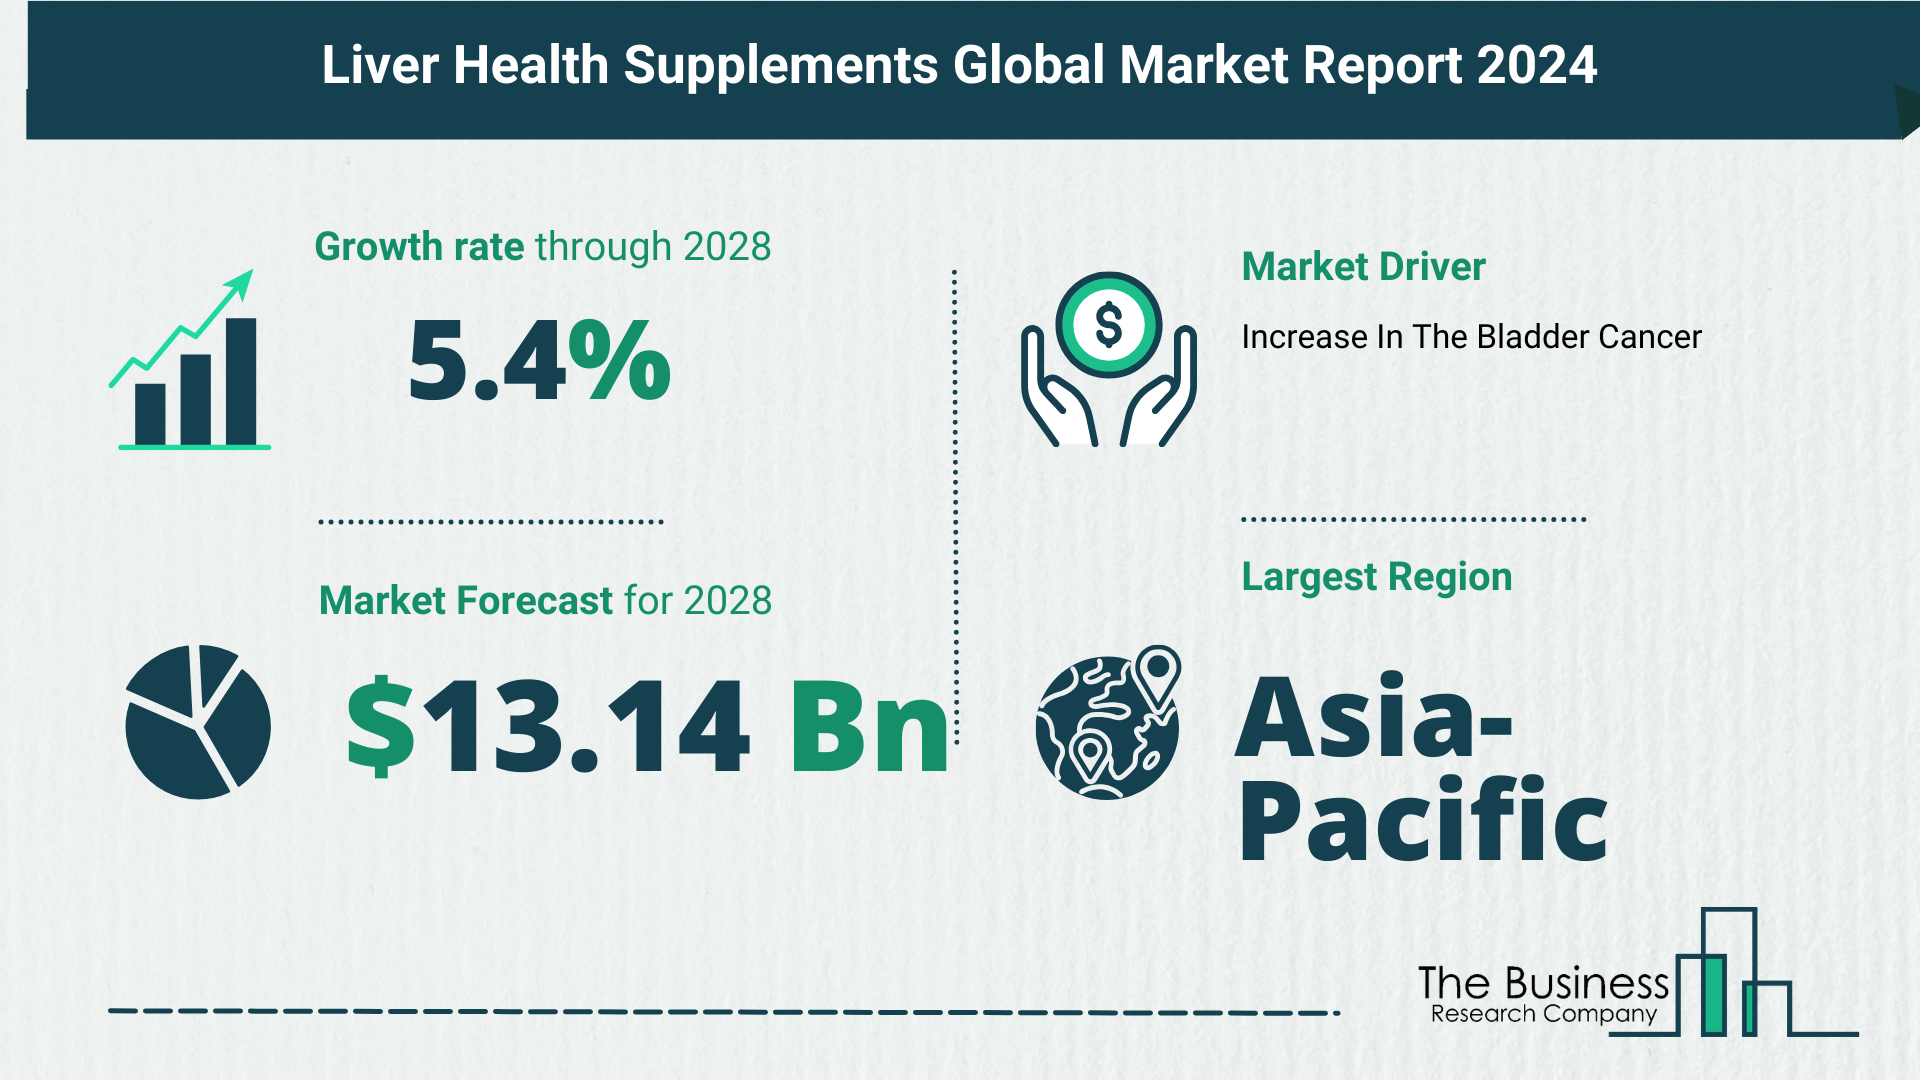 Global Liver Health Supplements Market